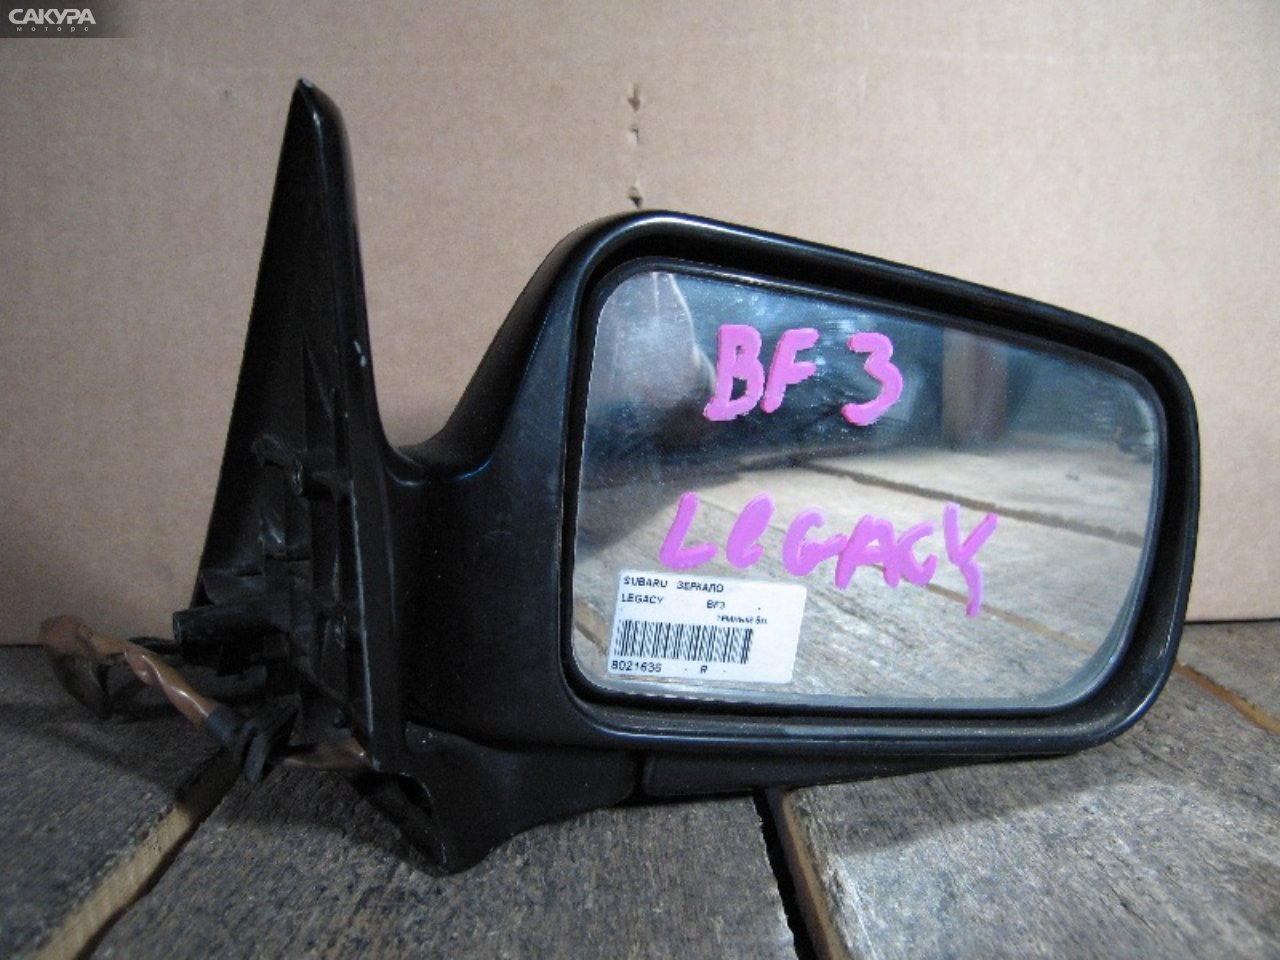 Зеркало боковое правое Subaru Legacy BF3: купить в Сакура Абакан.